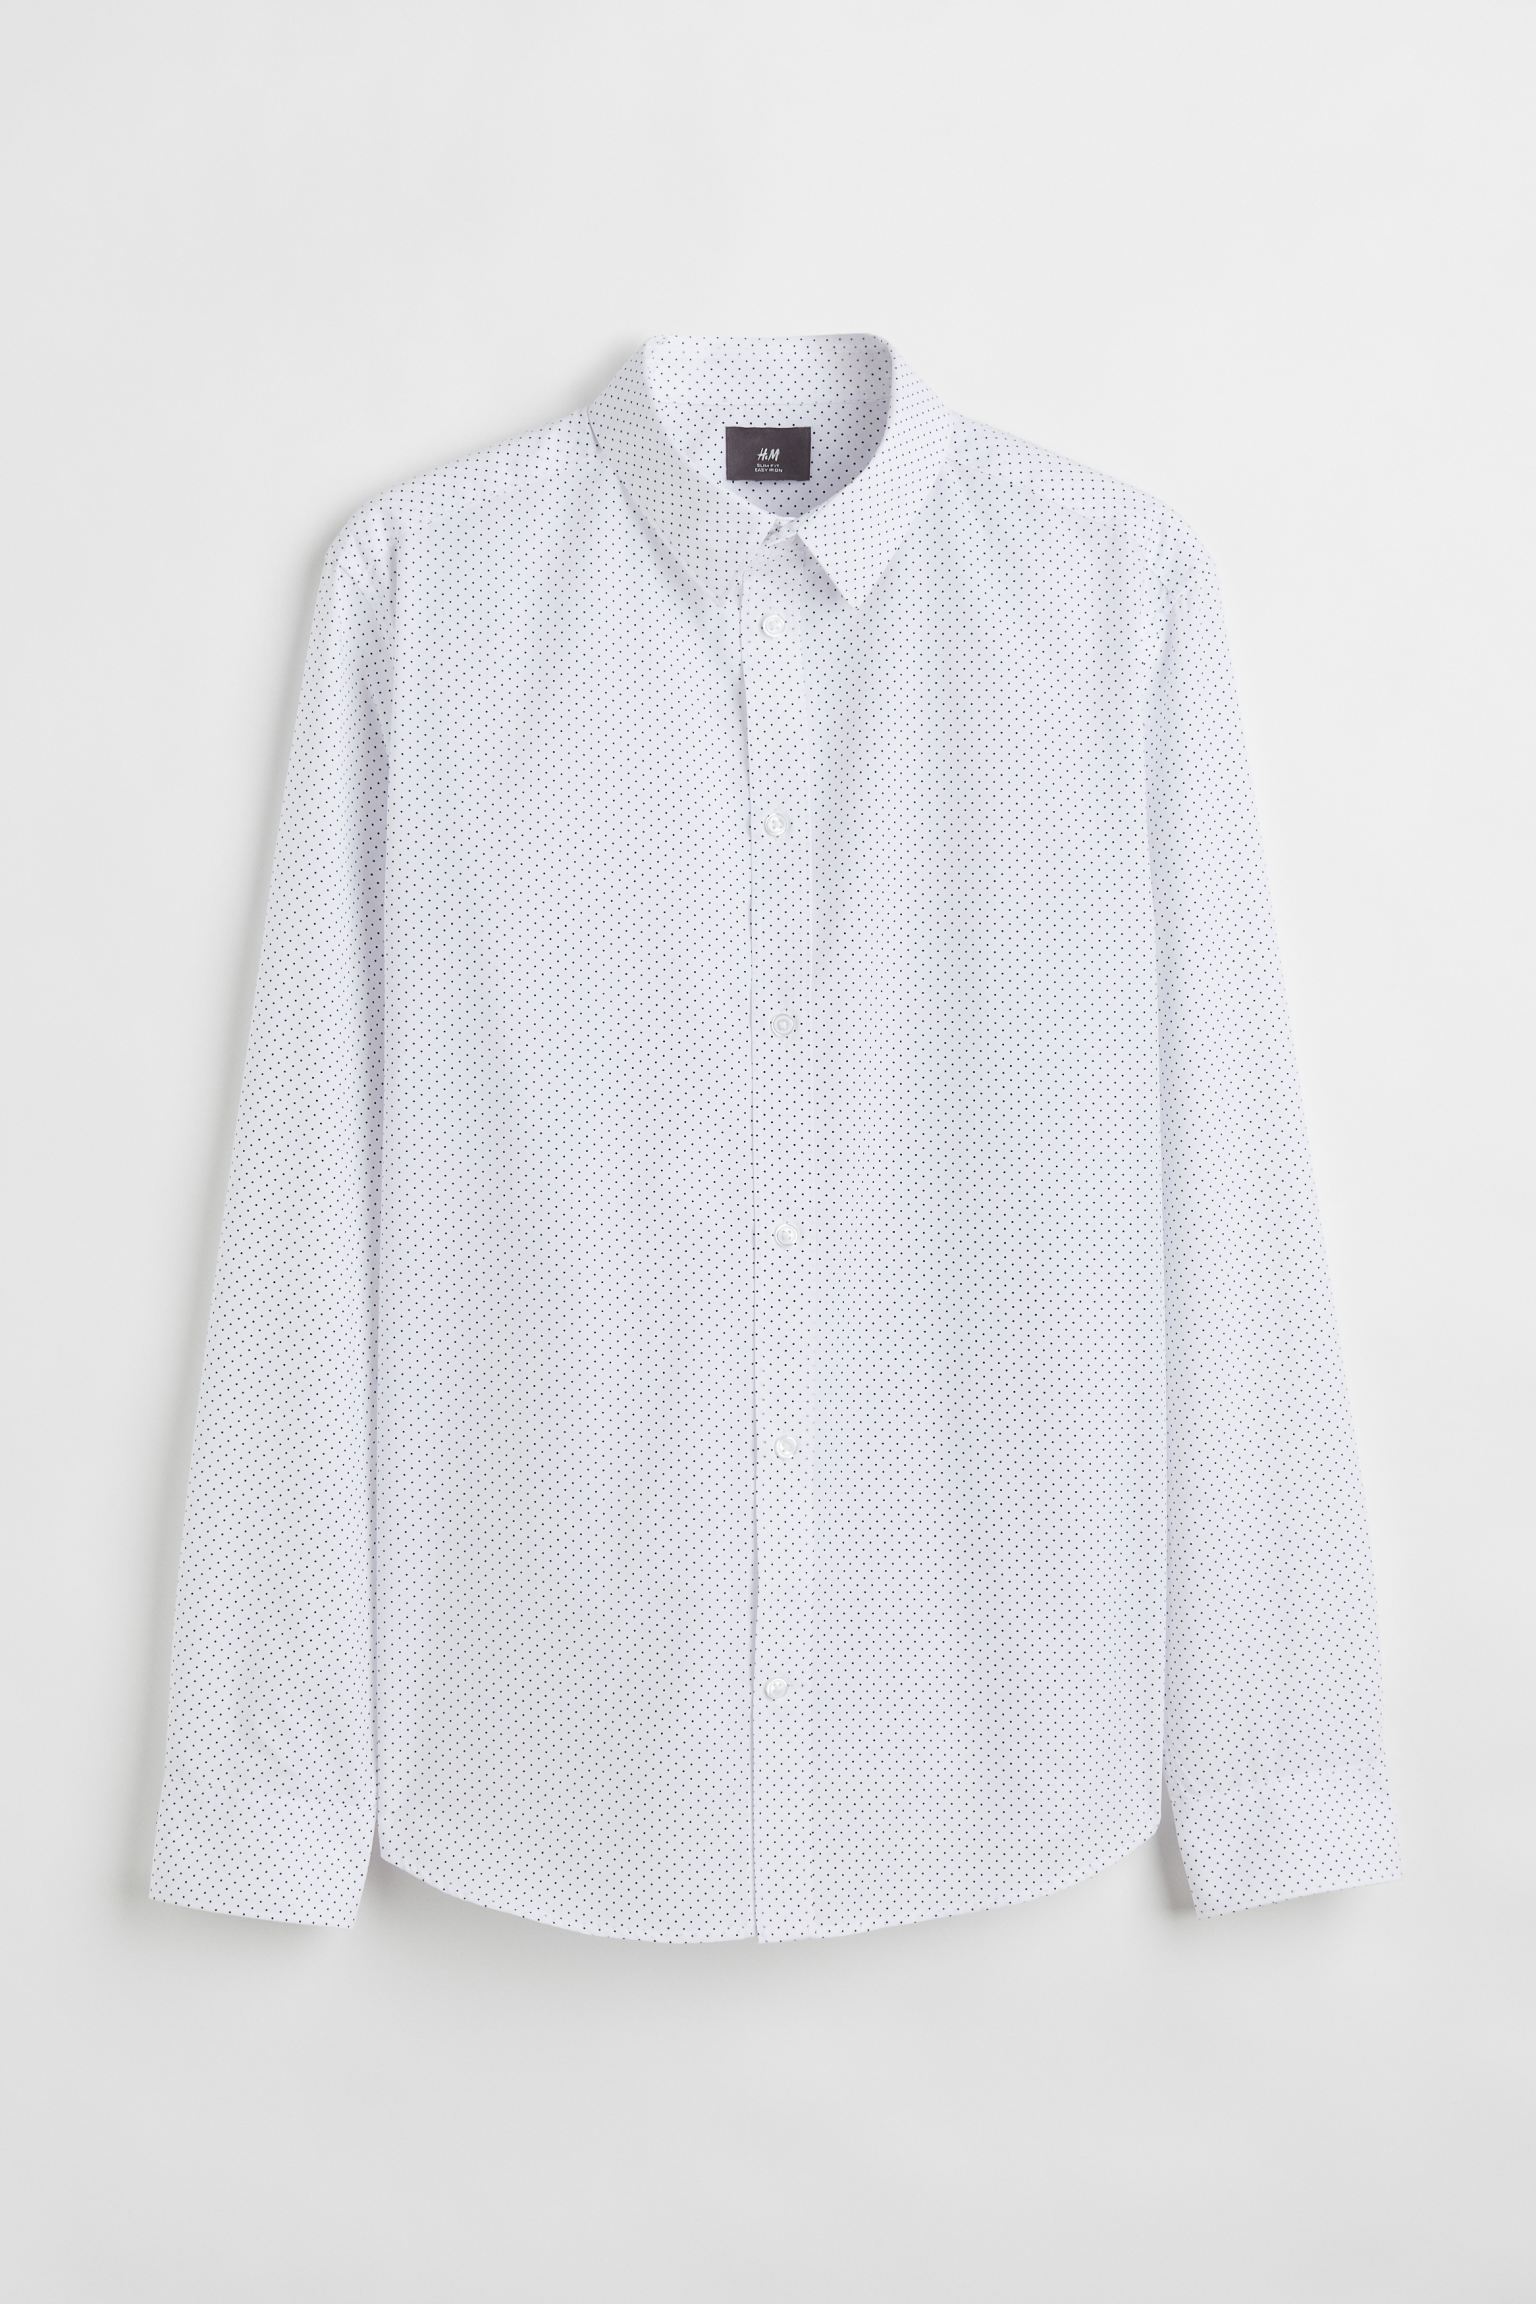 Рубашка мужская H&M 976709002 белая XL (доставка из-за рубежа)